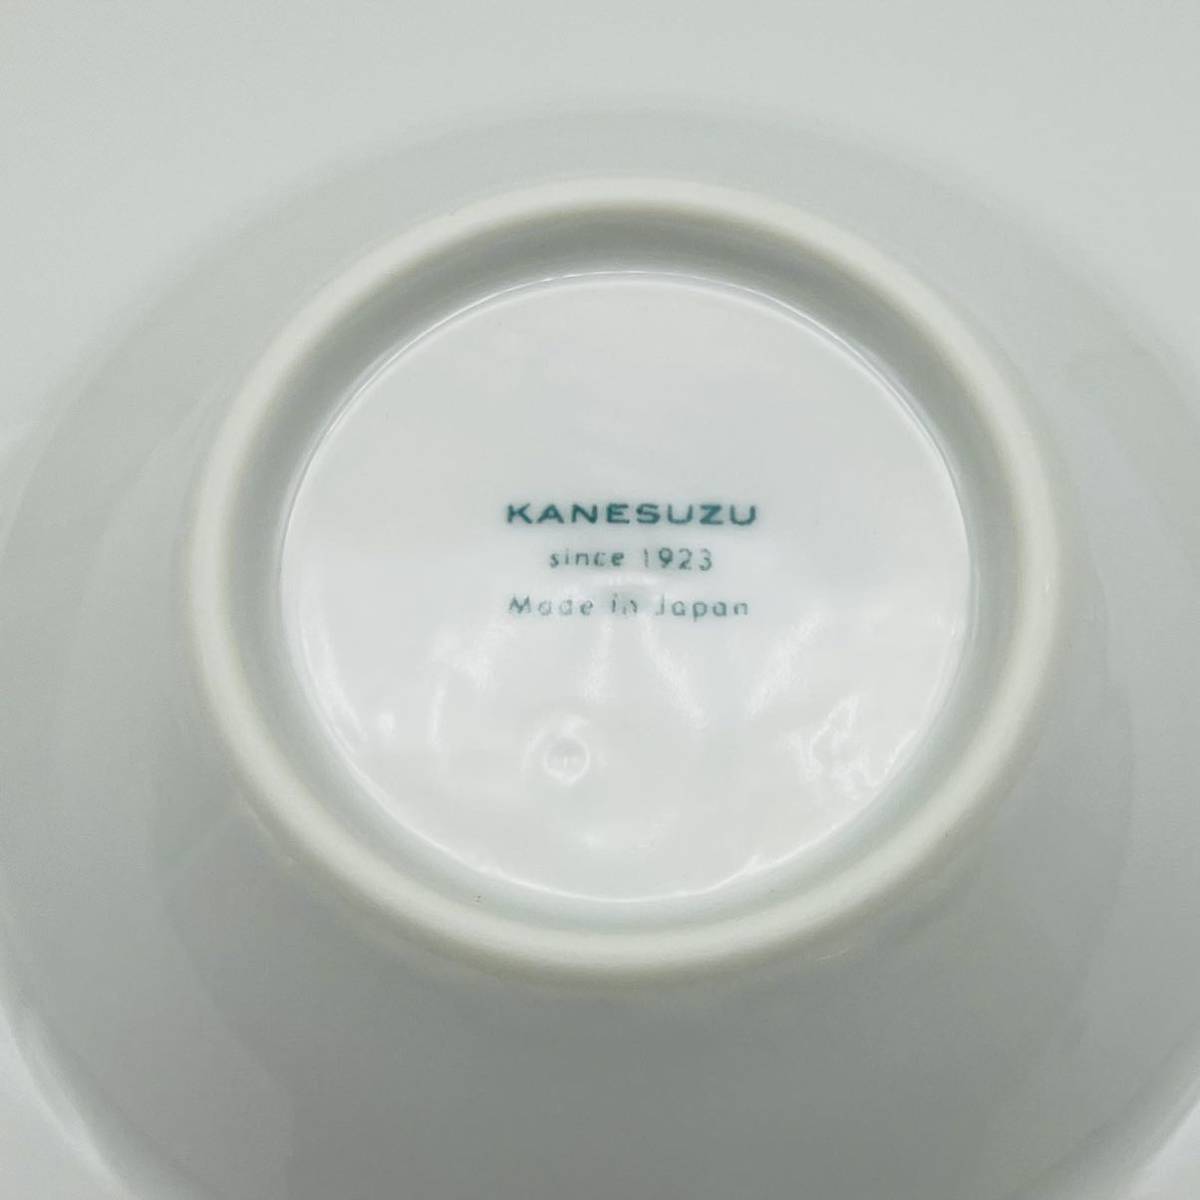 KANESUZU カネスズ ディナープレート グルメプレート プレート 24cm 平型 リム皿 スープ皿 パスタ皿 白 ホワイト 洋食器 日本製 AT_画像5